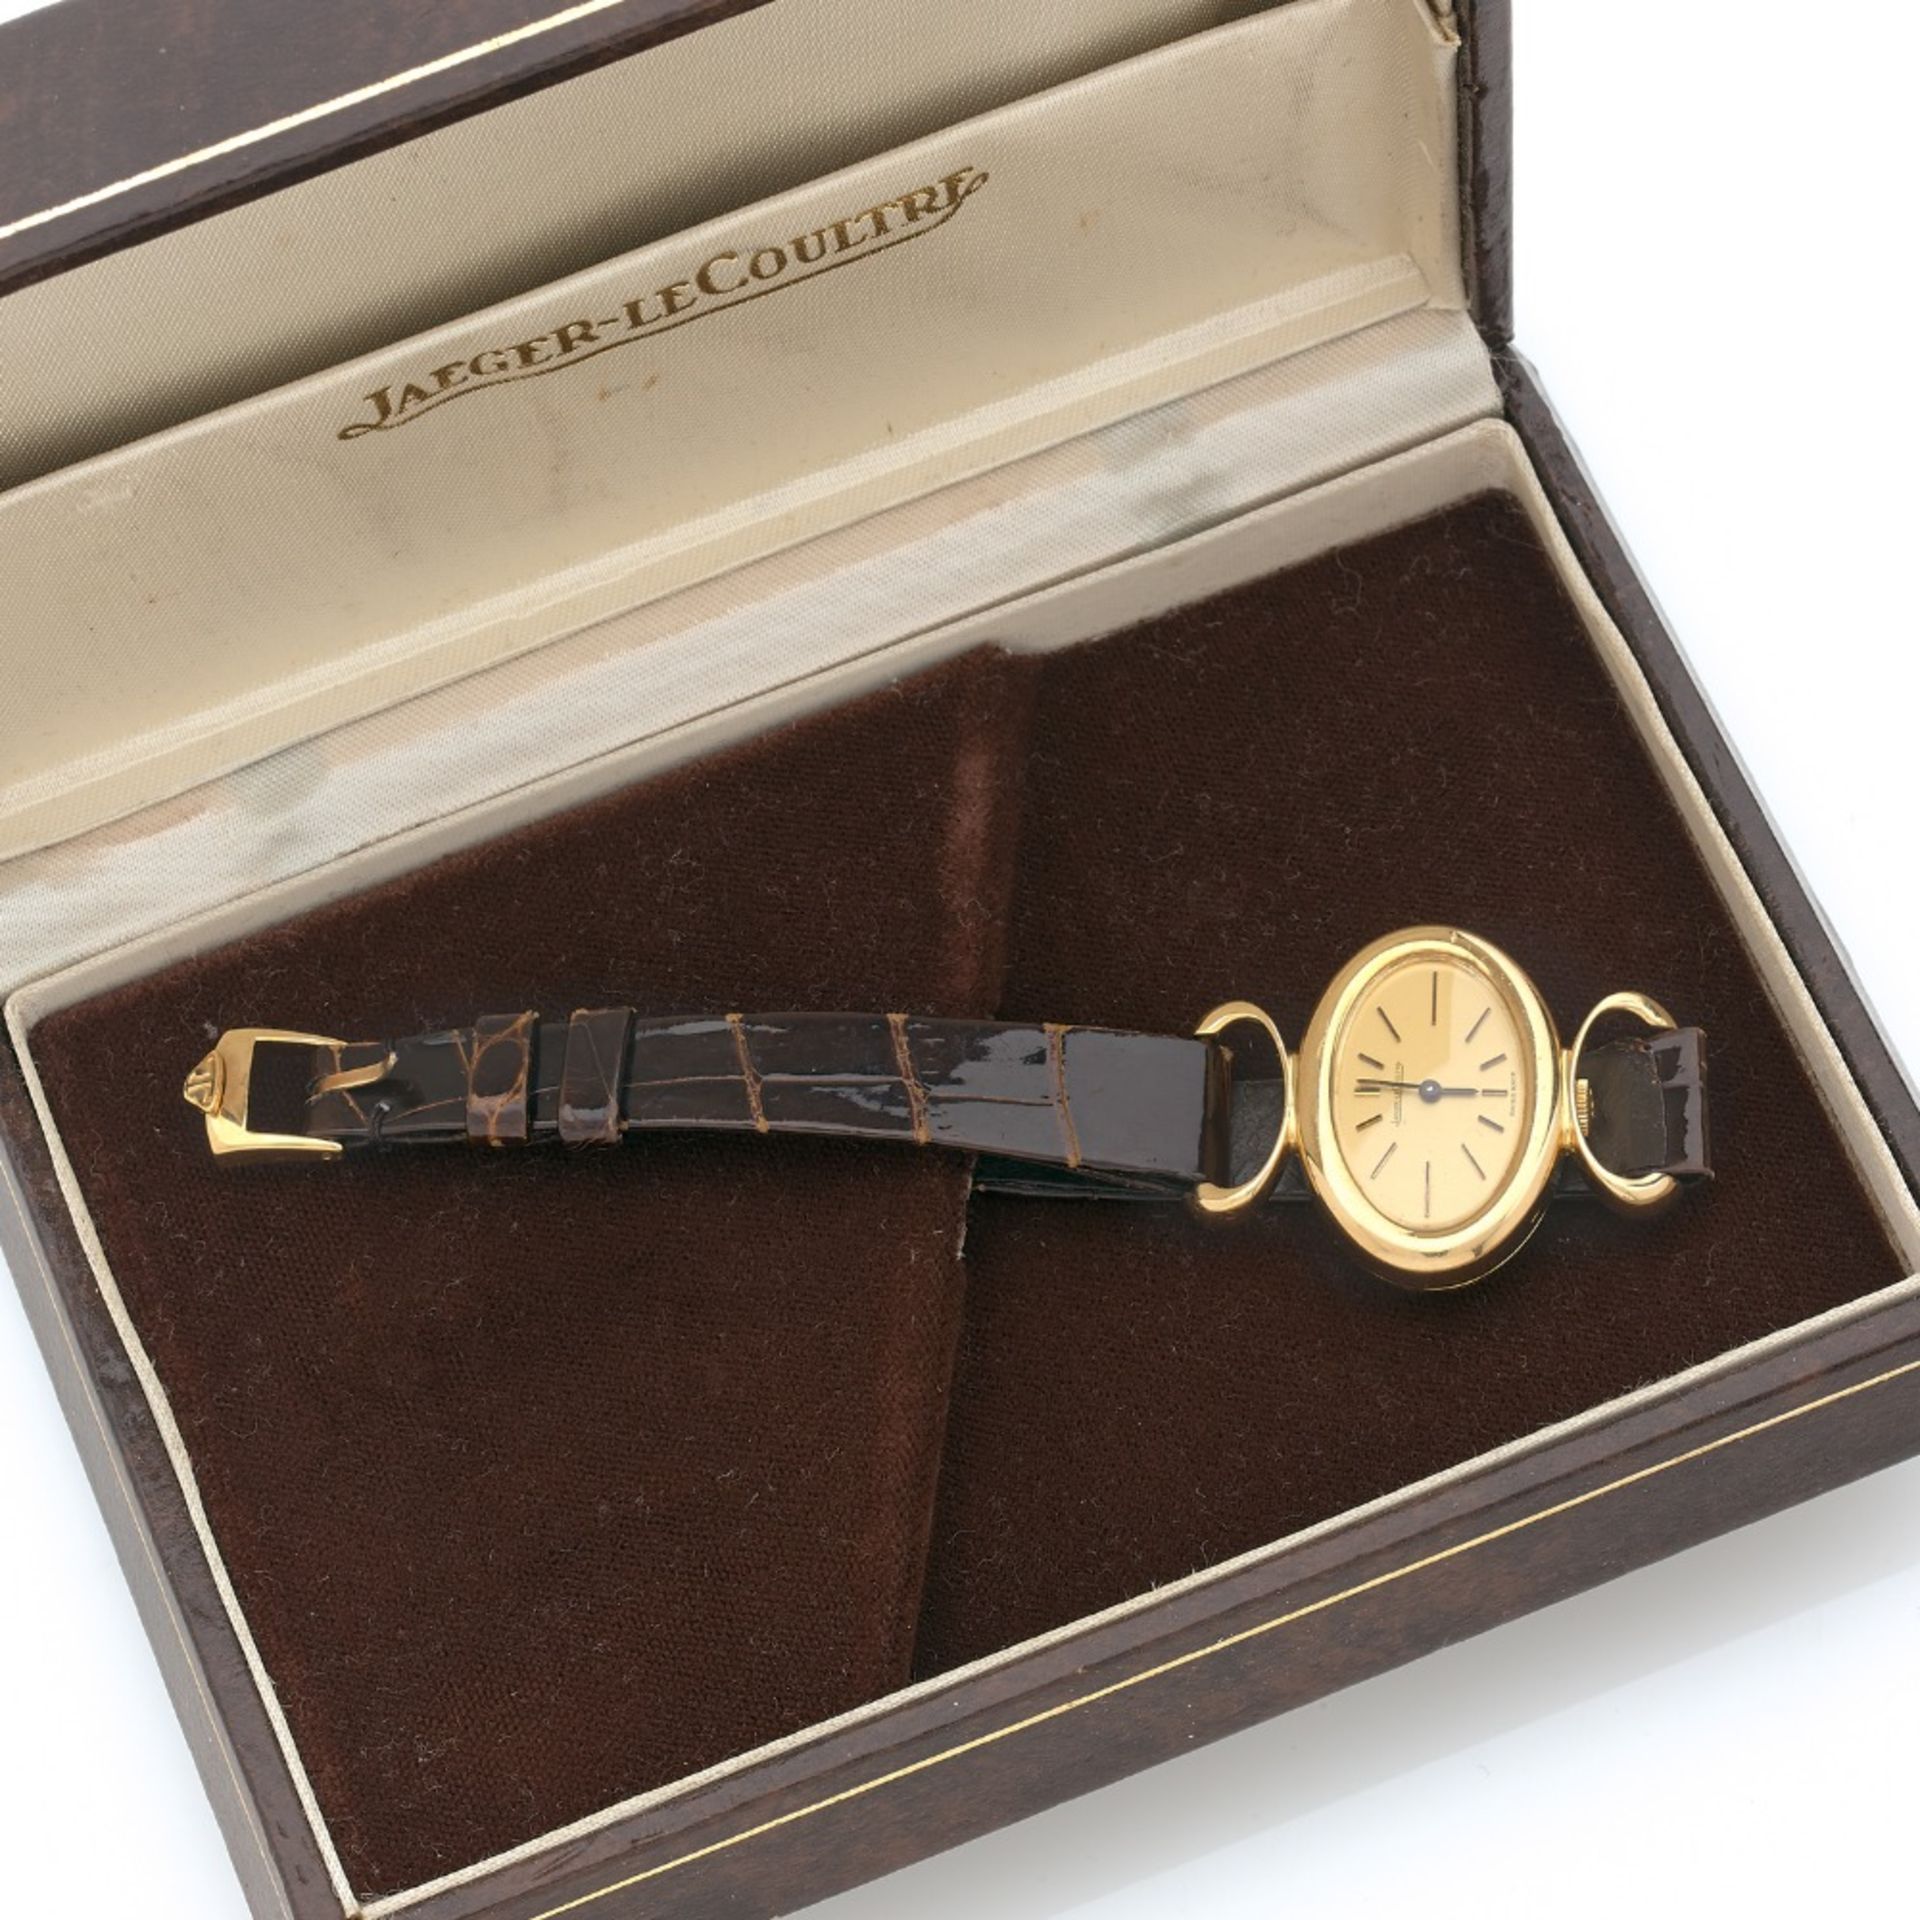 JAEGER LECOULTRE ETRIER, Montre bracelet de dame en or jaune 18K sur cuir. BOITIER : ovale à - Image 2 of 2